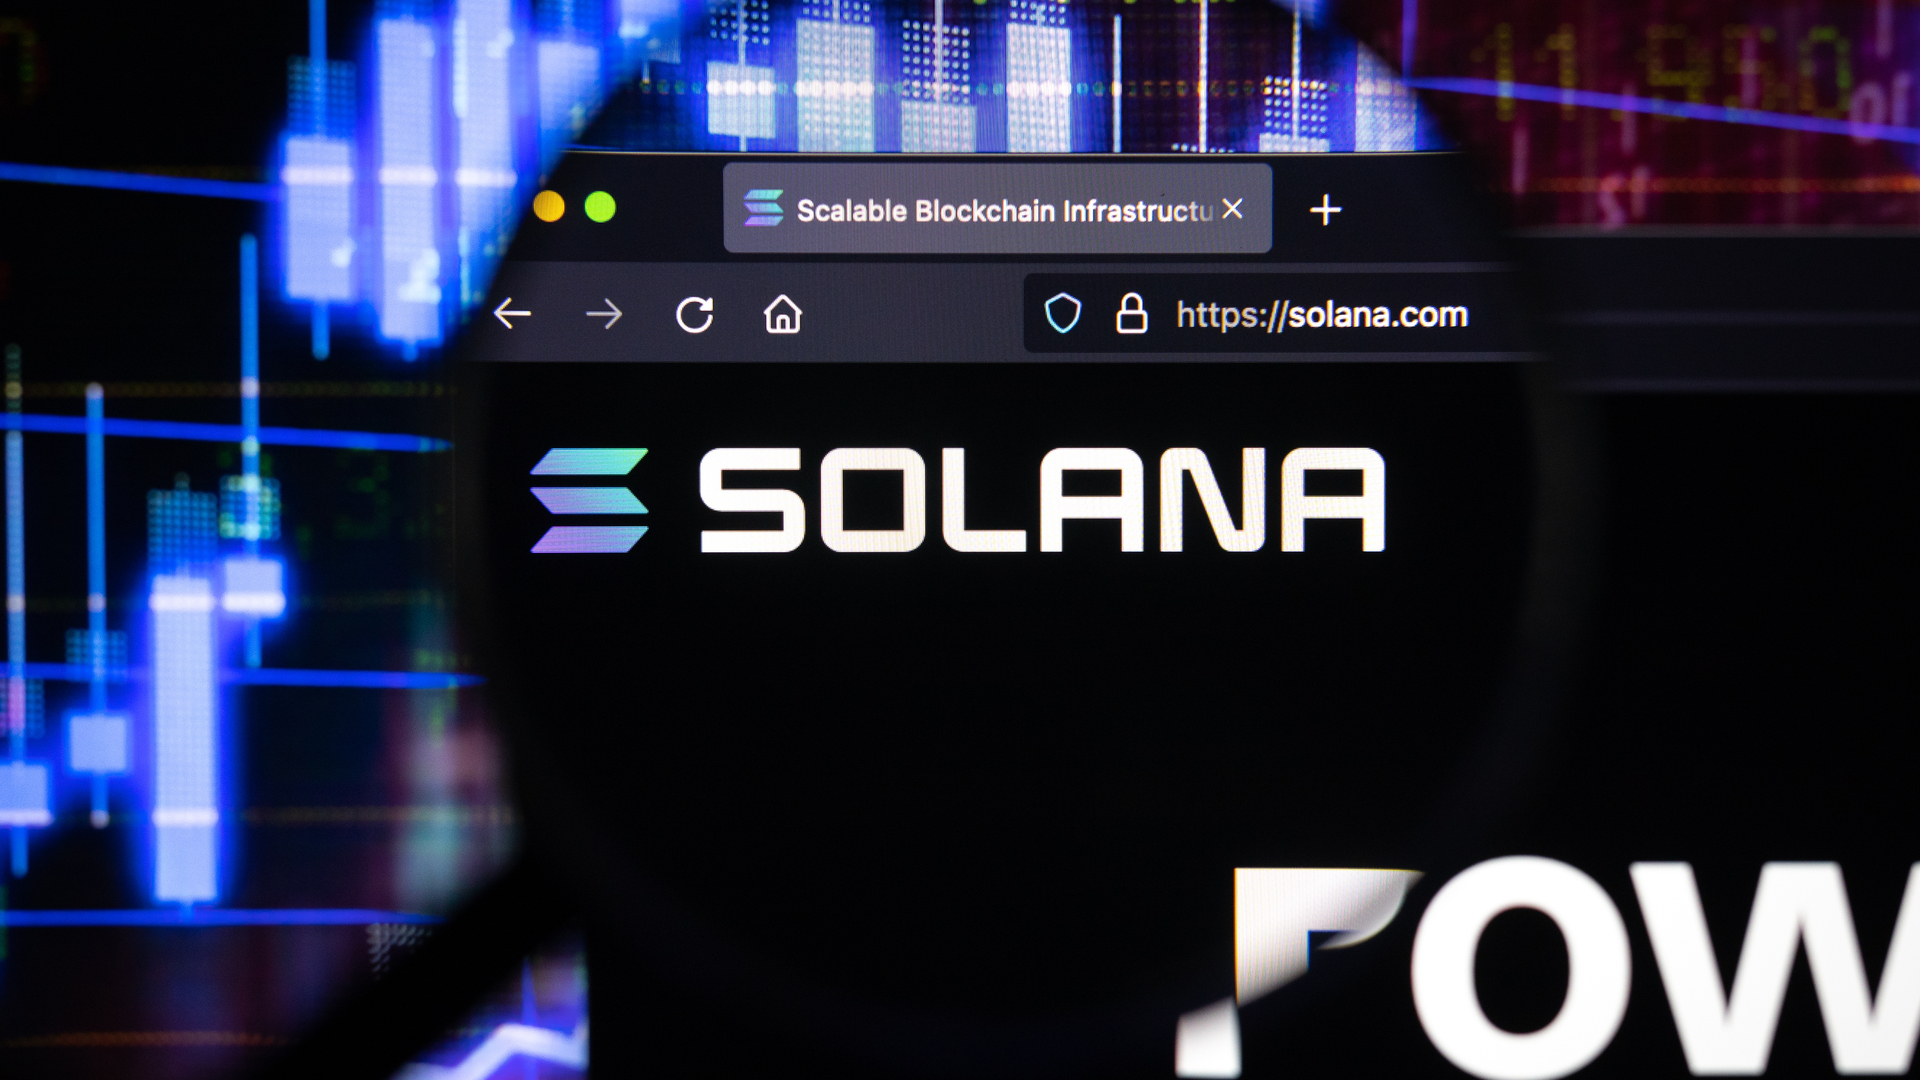 Smartphone de Solana com foco na Web 3.0 representará um 'salto